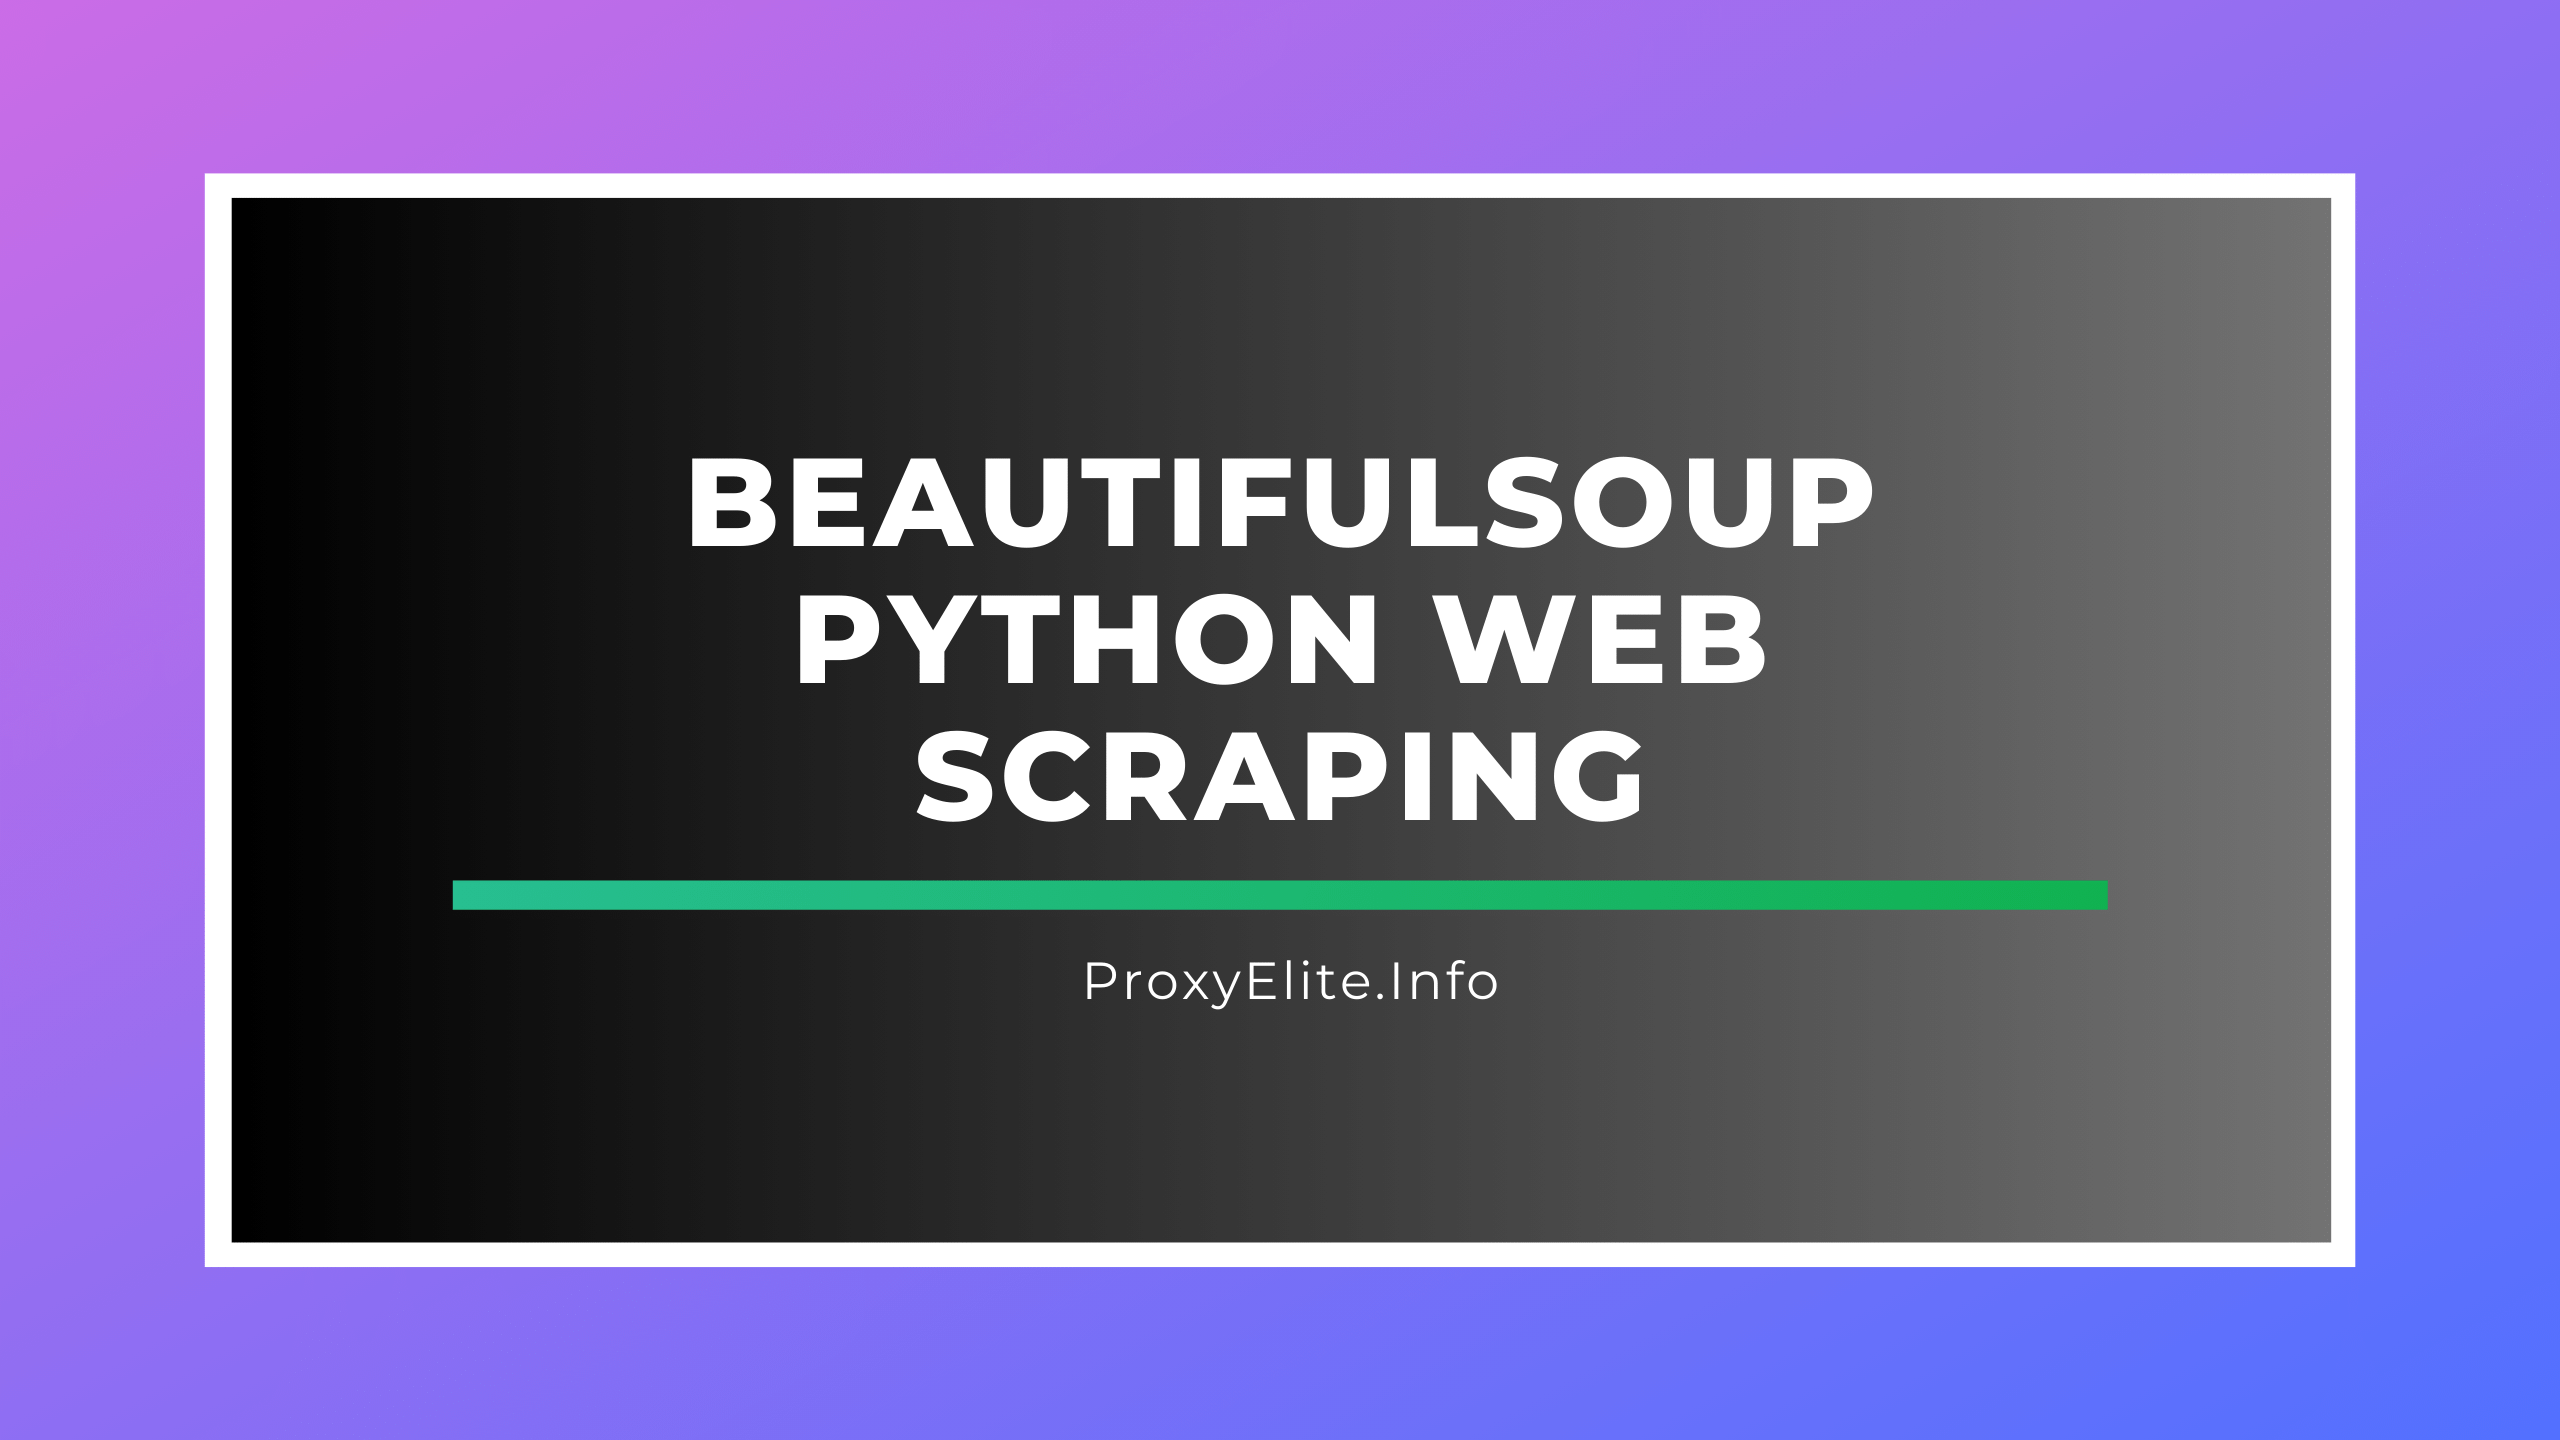 Raspado web de Python de BeautifulSoup